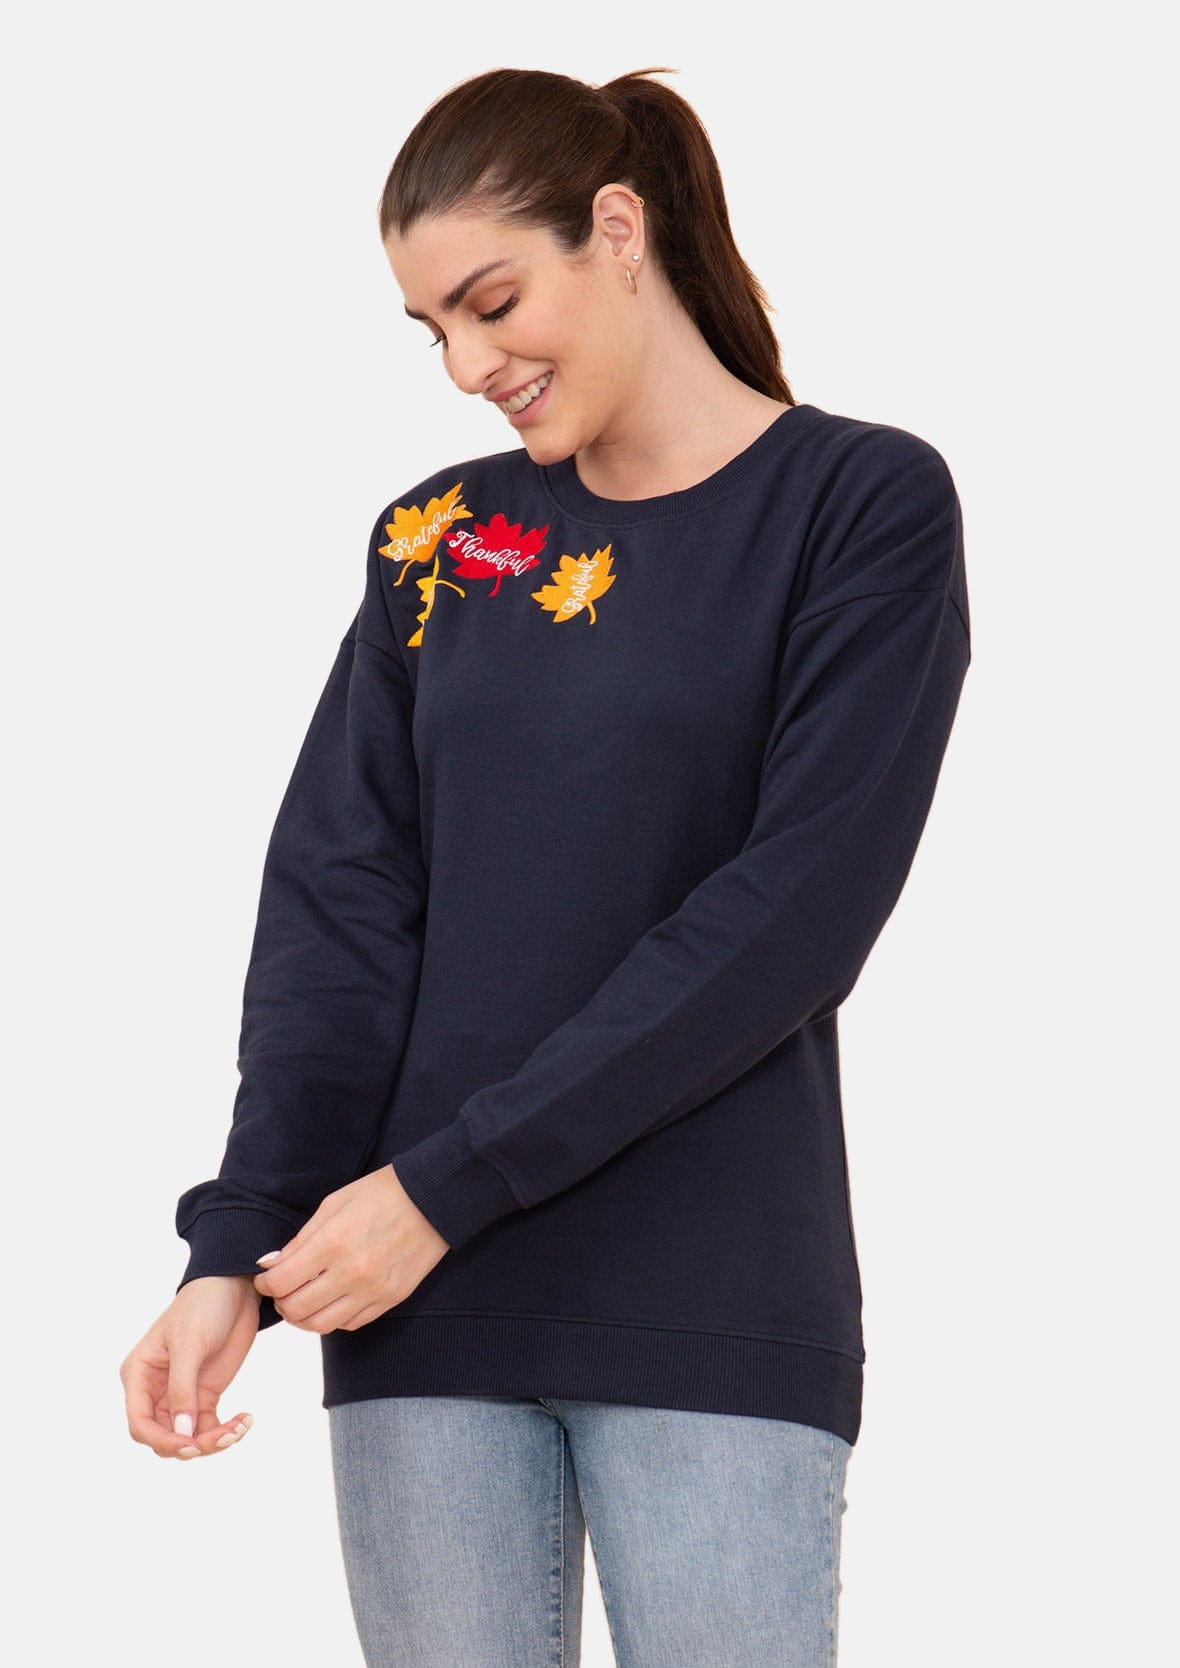 Leaf Applique Holiday Sweatshirt